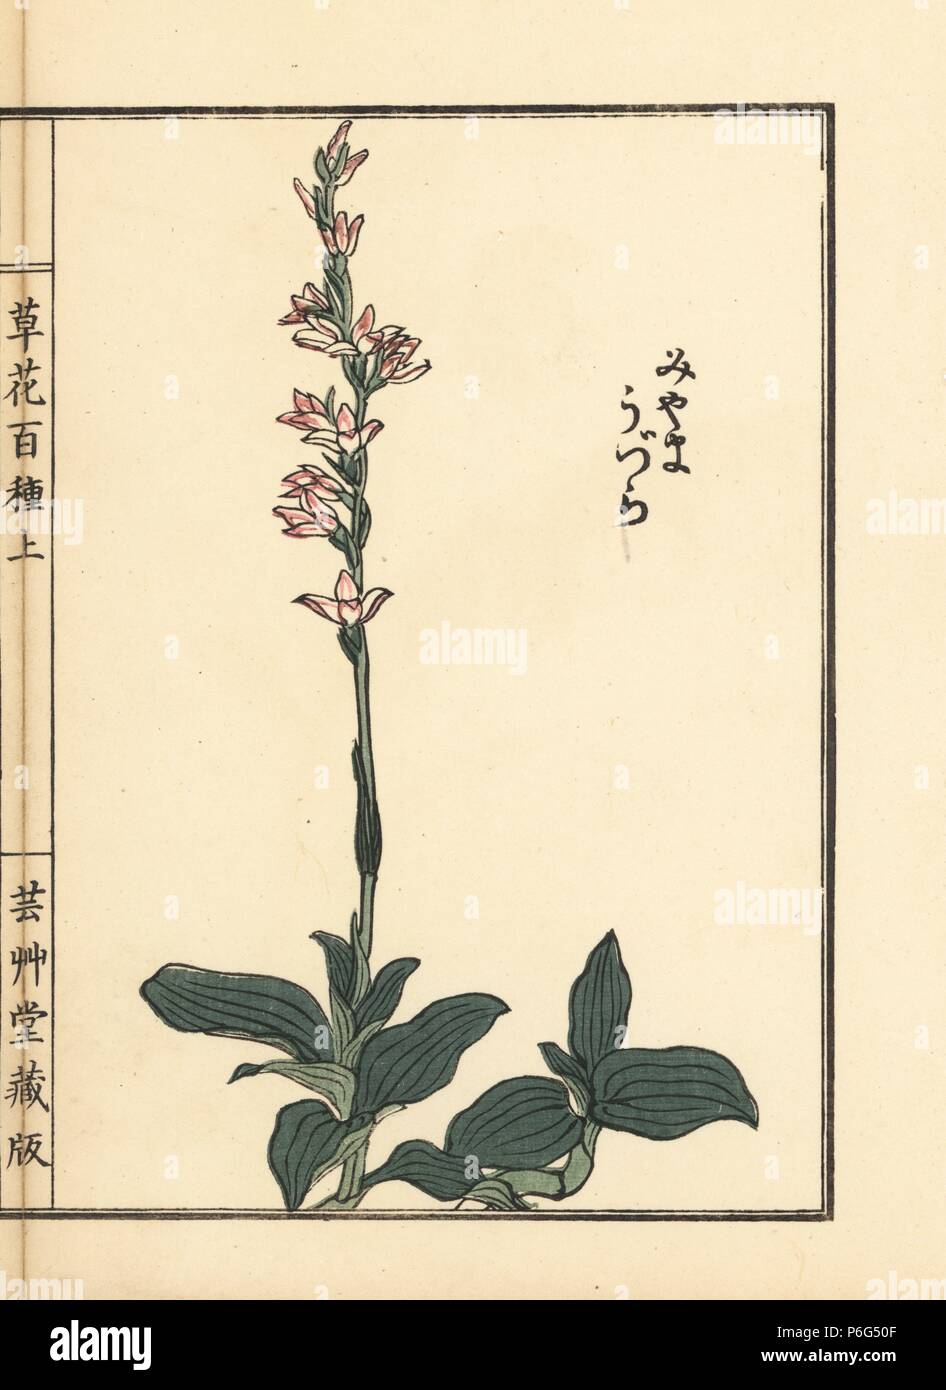 Miyama uzura or jewel orchid, Goodyera schlechtendaliana. Handcoloured woodblock print by Kono Bairei from Kusa Bana Hyakushu (One Hundred Varieties of Flowers), Tokyo, Yamada, 1901. Stock Photo